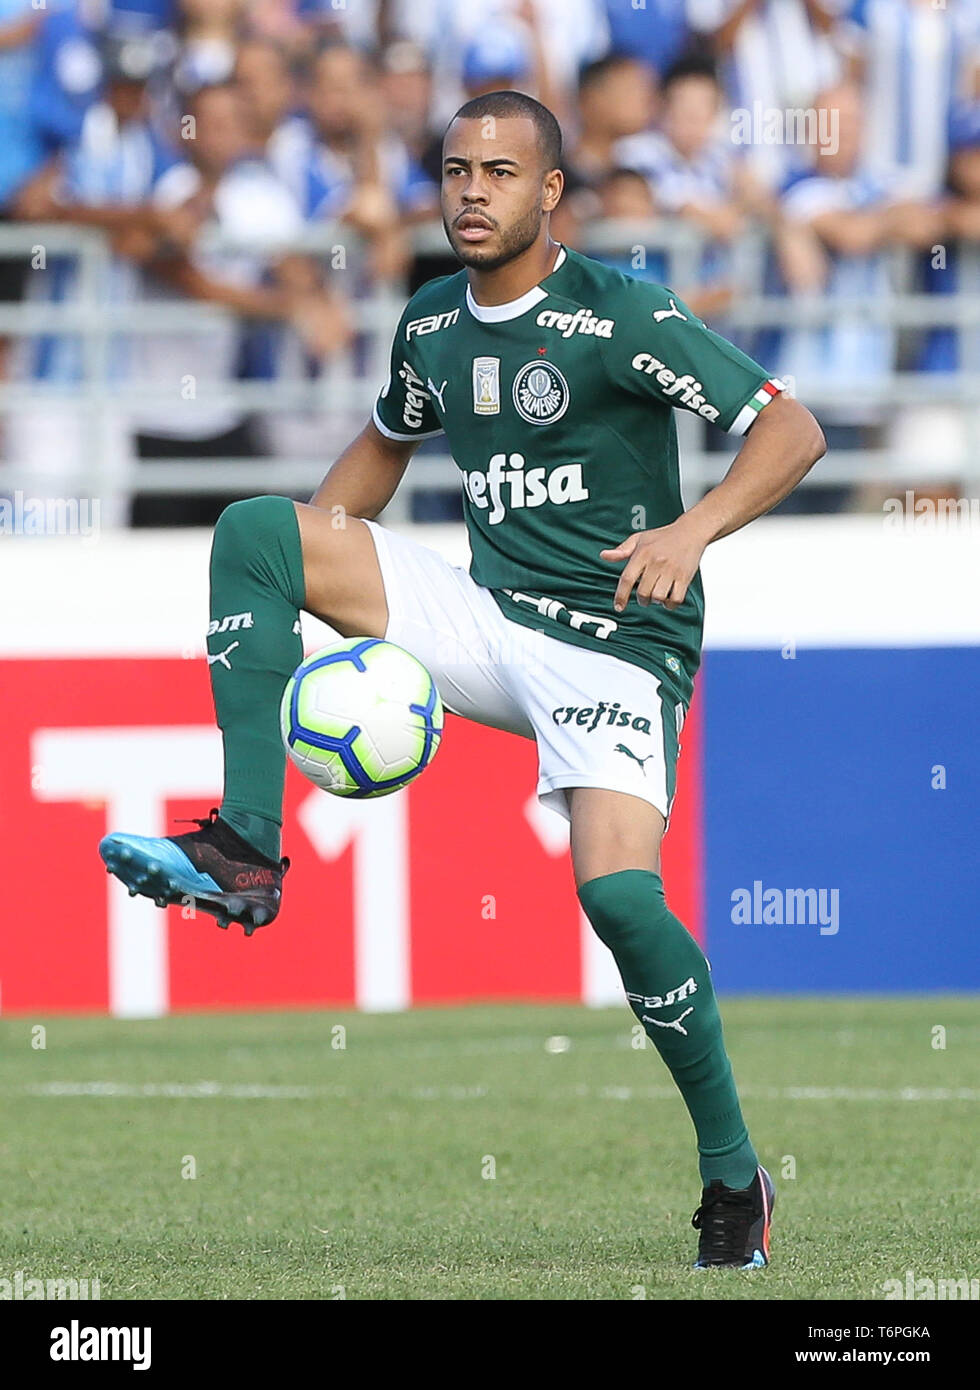 Official Brasil SoccerStarz Cesar: Buy Online on Offer